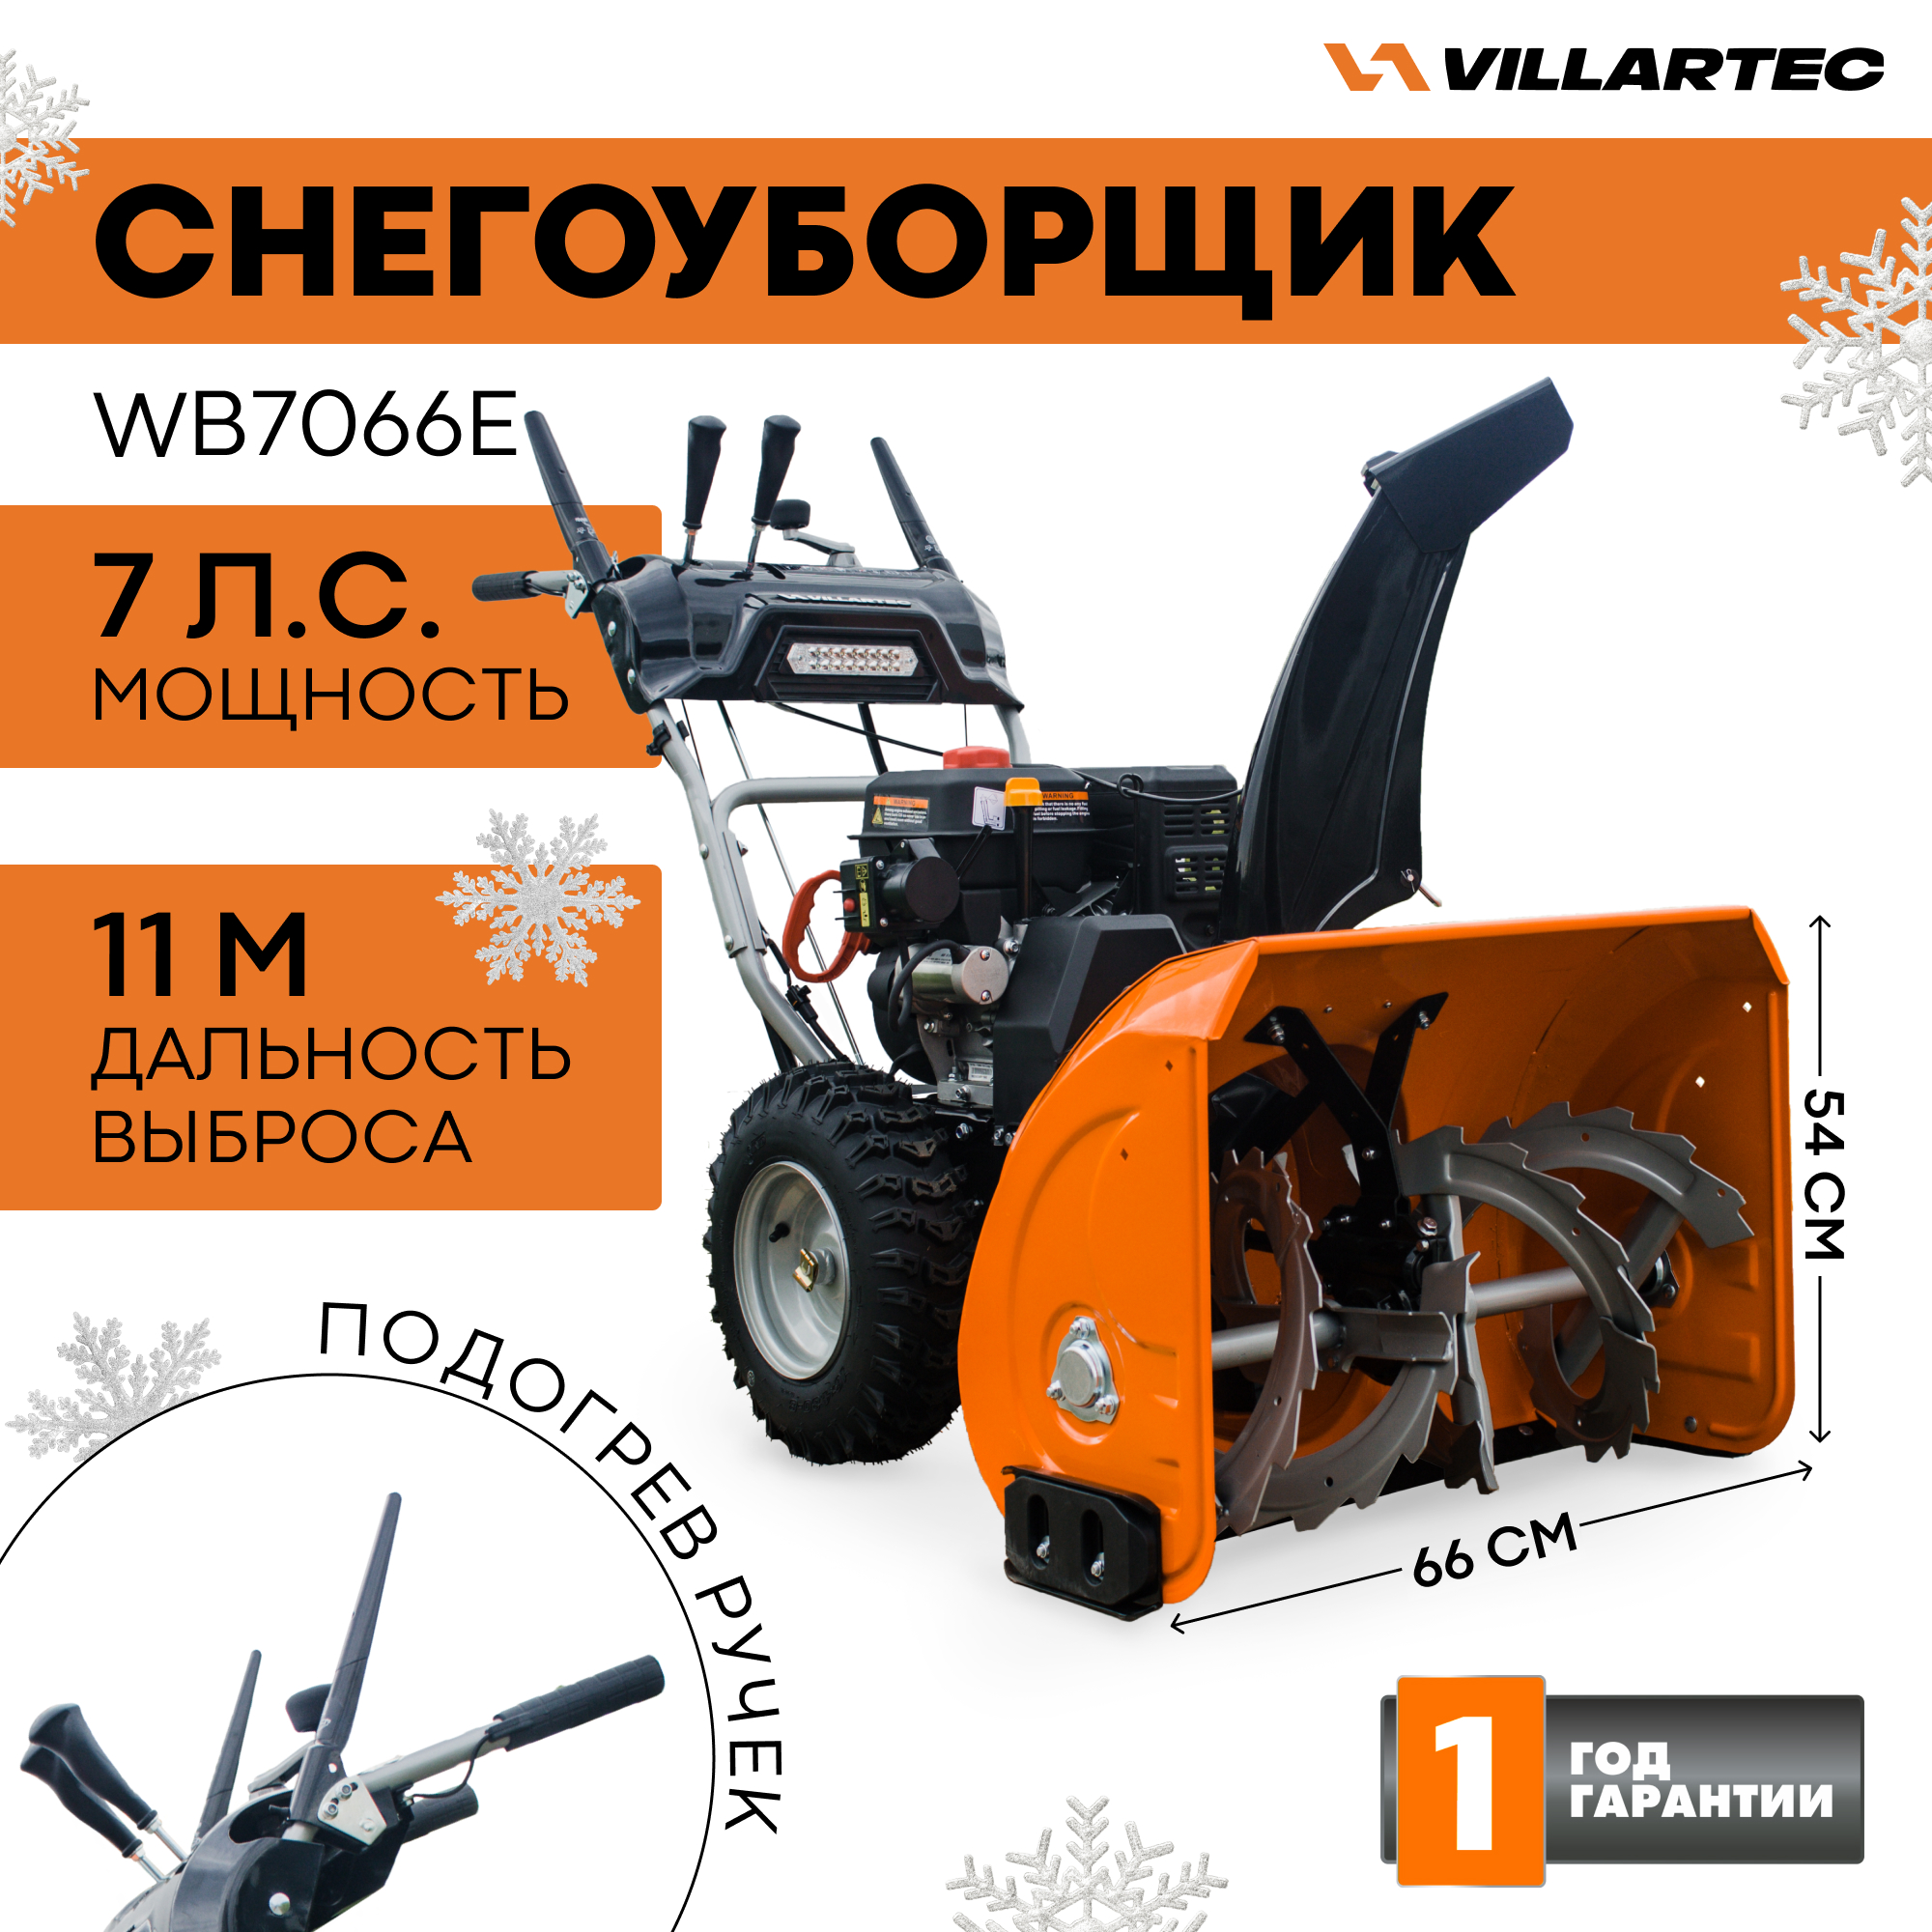 Снегоуборщик бензиновый VILLARTEC WB7066E